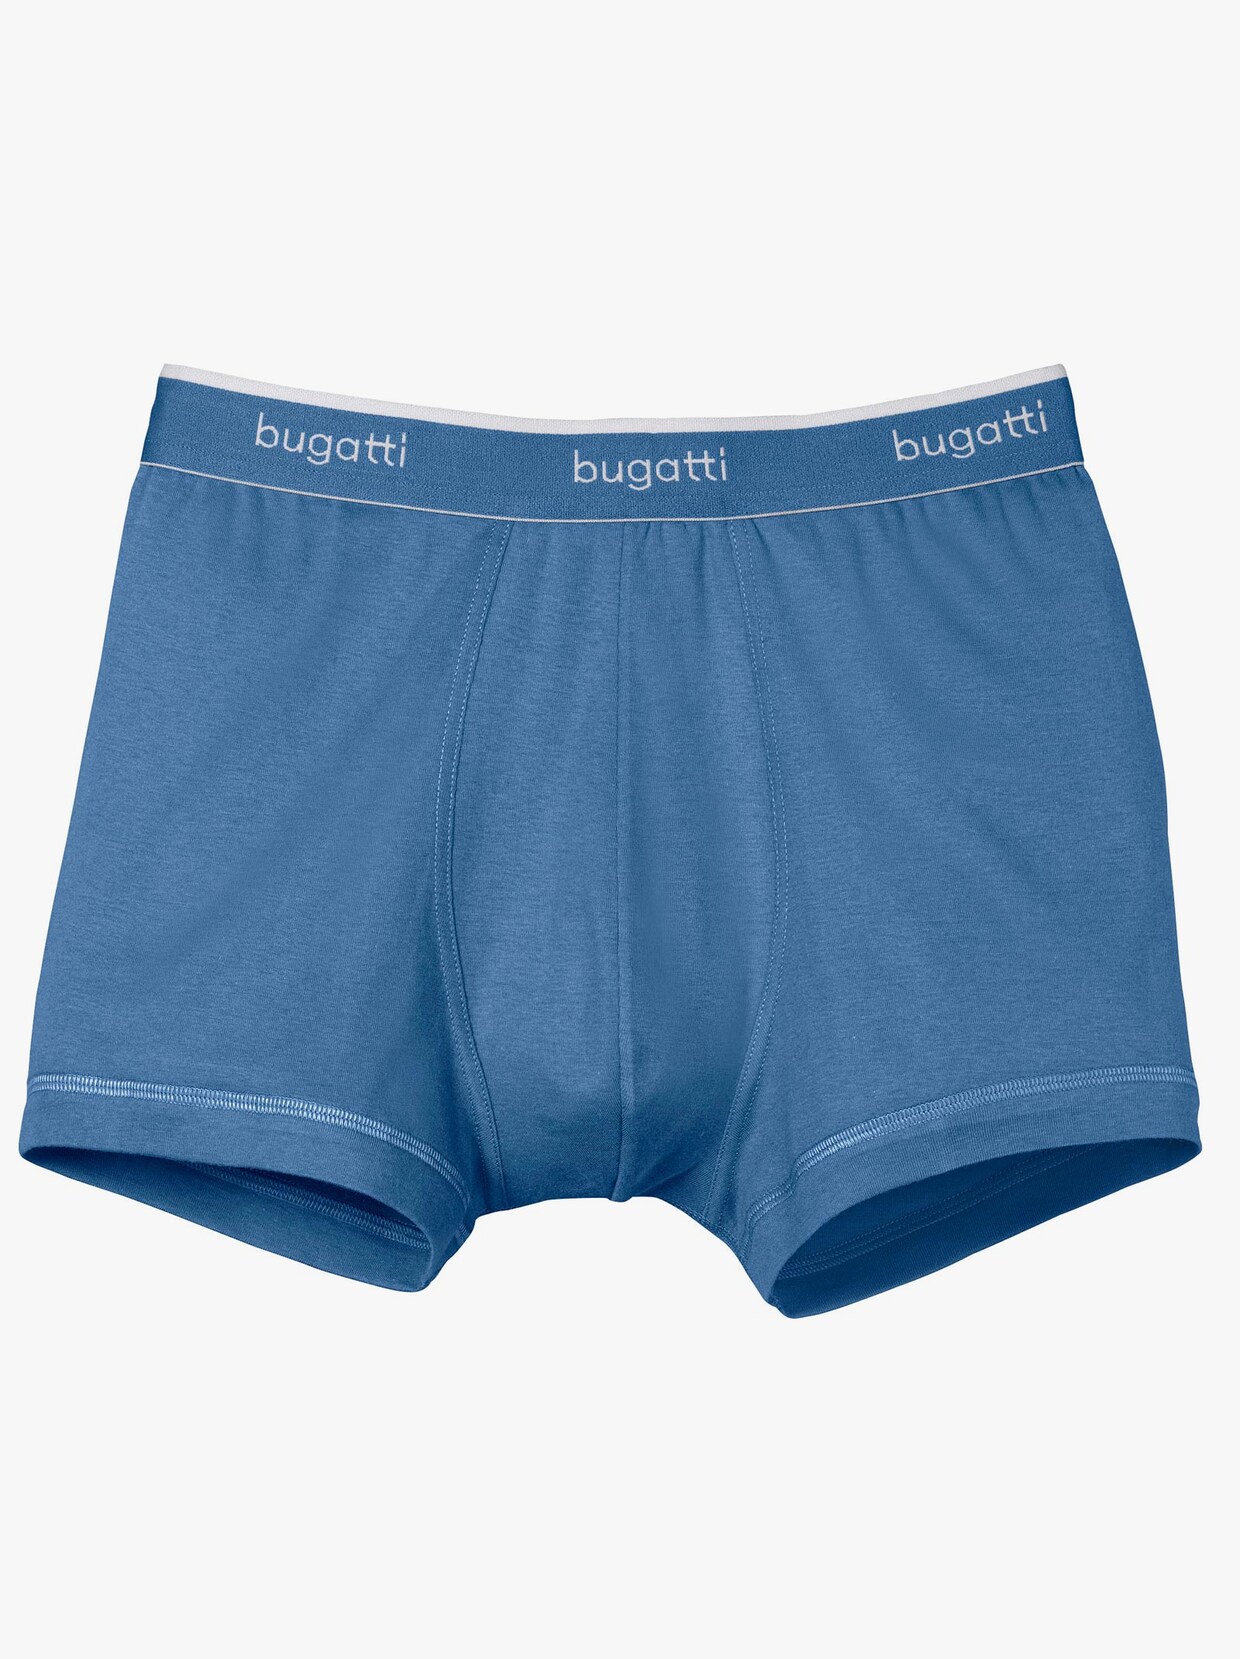 bugatti Pants - blau